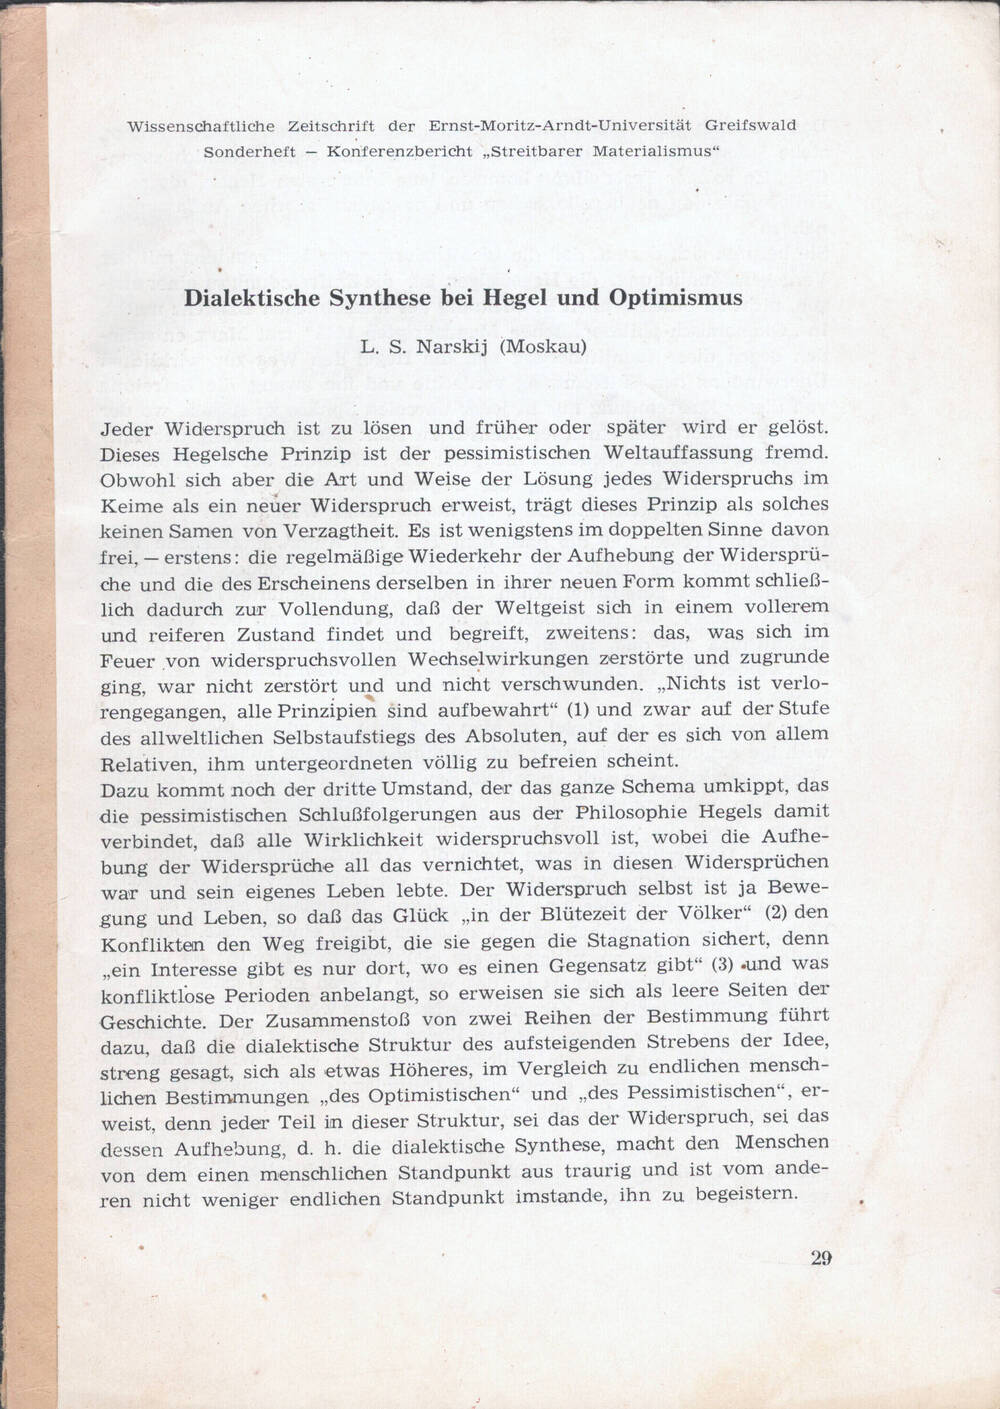 Брошюра со статьей «Dialektische Synthese bei Hegel und Optimismus».